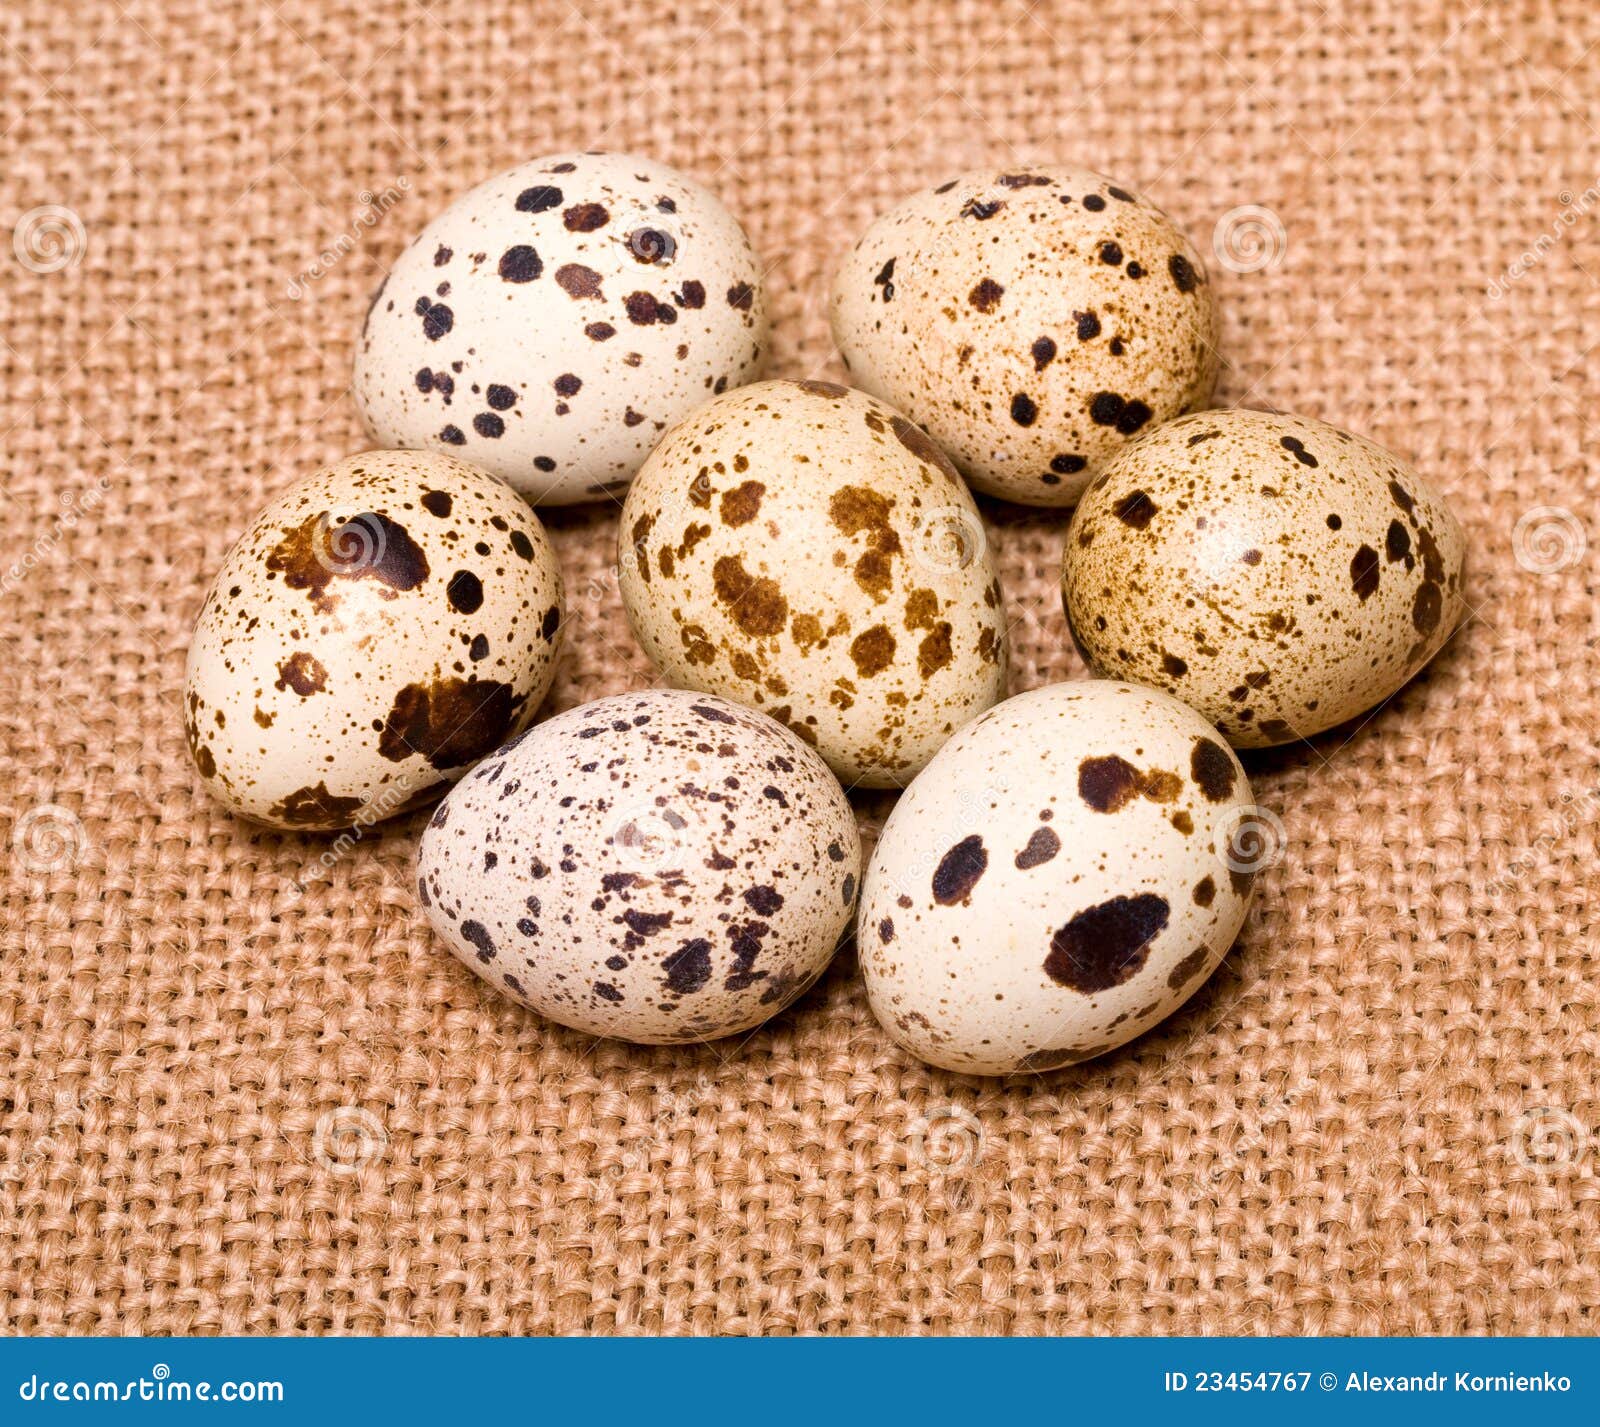 bobwhite quail eggs